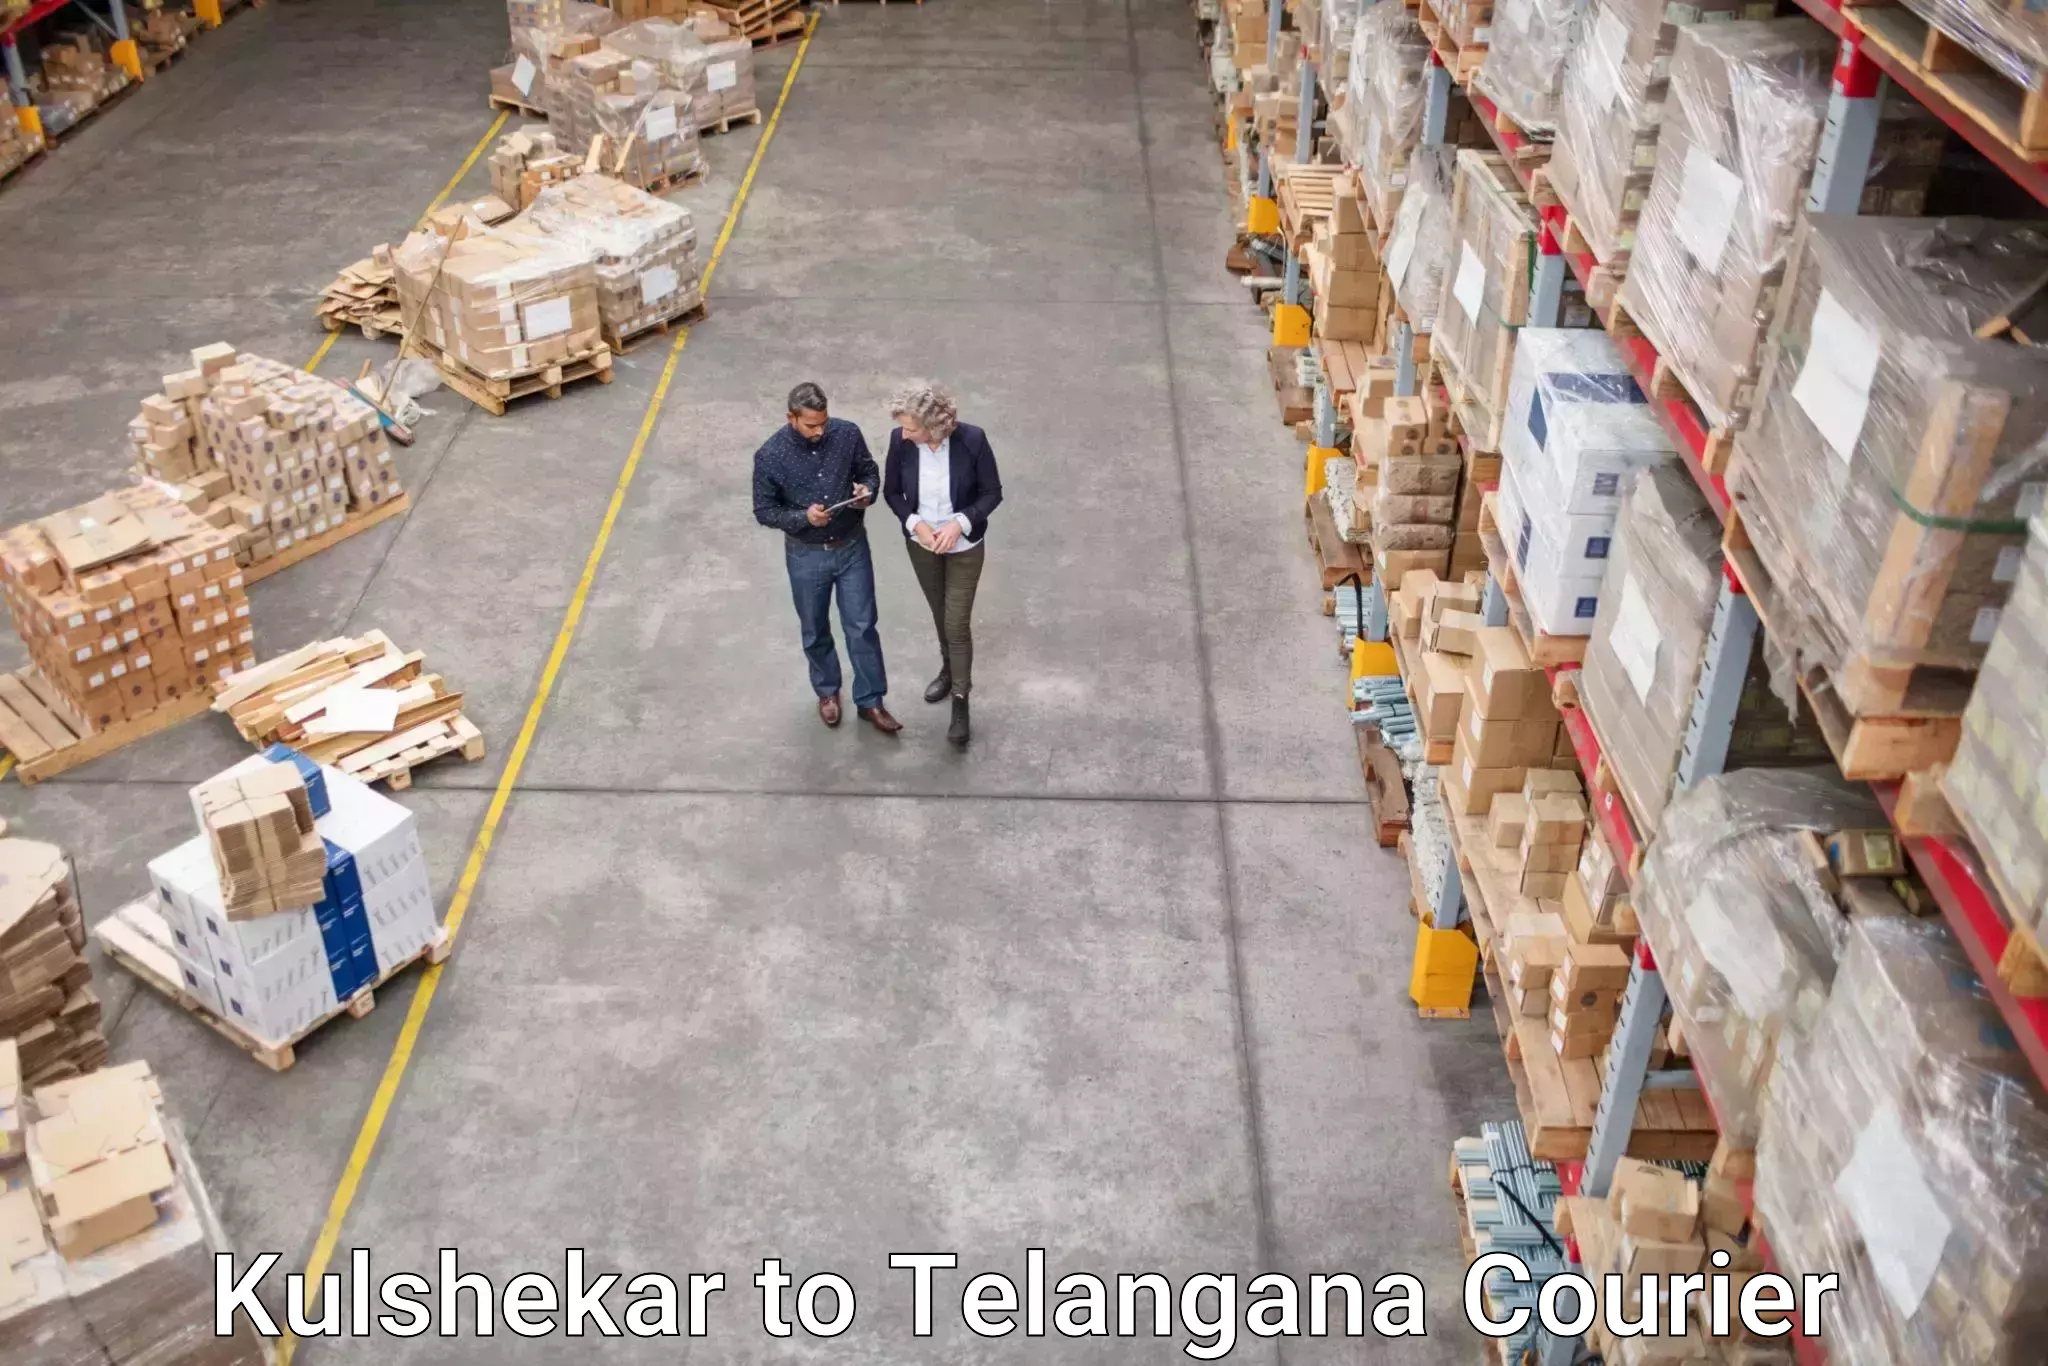 Efficient parcel delivery Kulshekar to Yerrupalem